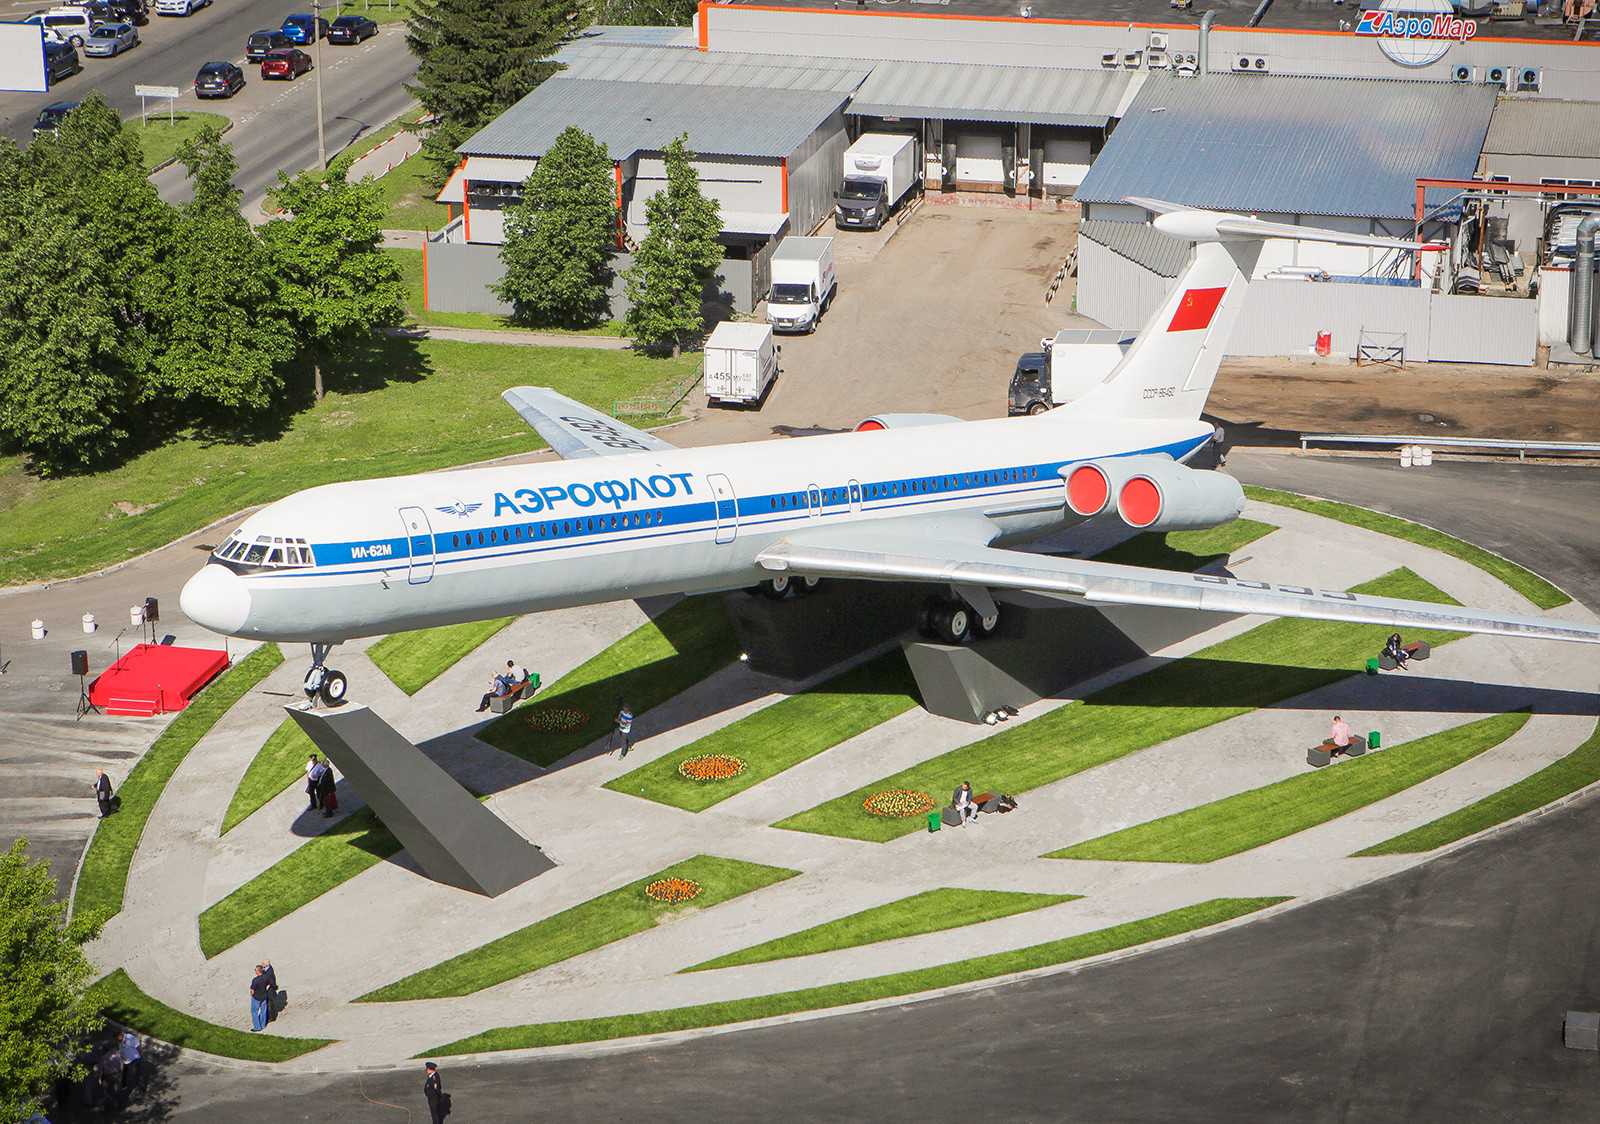 シェレメーチェヴォ空港で記念として置かれたIl-62。